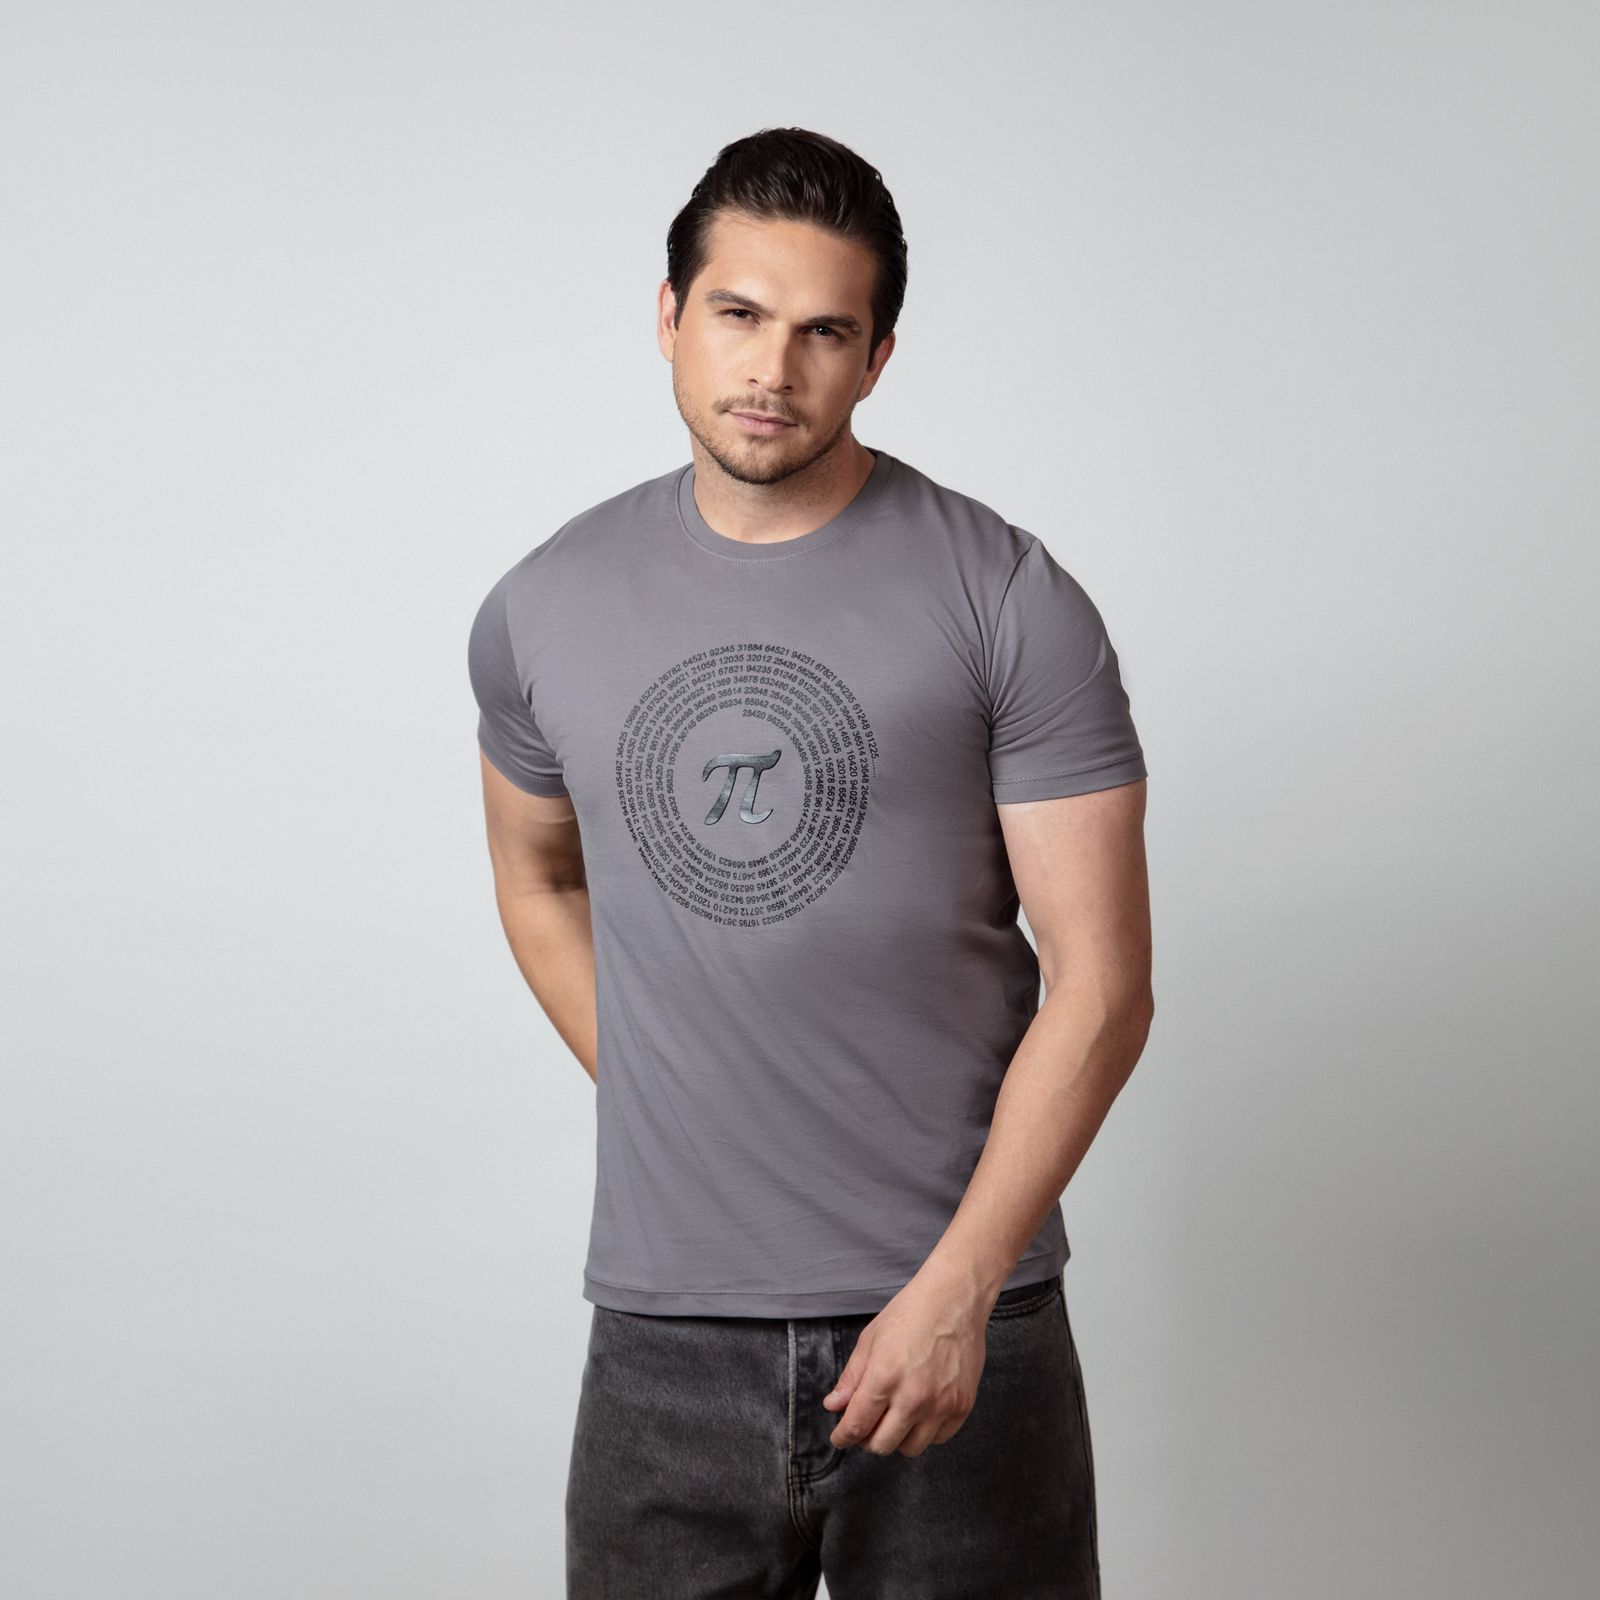 تی شرت آستین کوتاه مردانه باینت مدل 764-2 رنگ طوسی  -  - 1